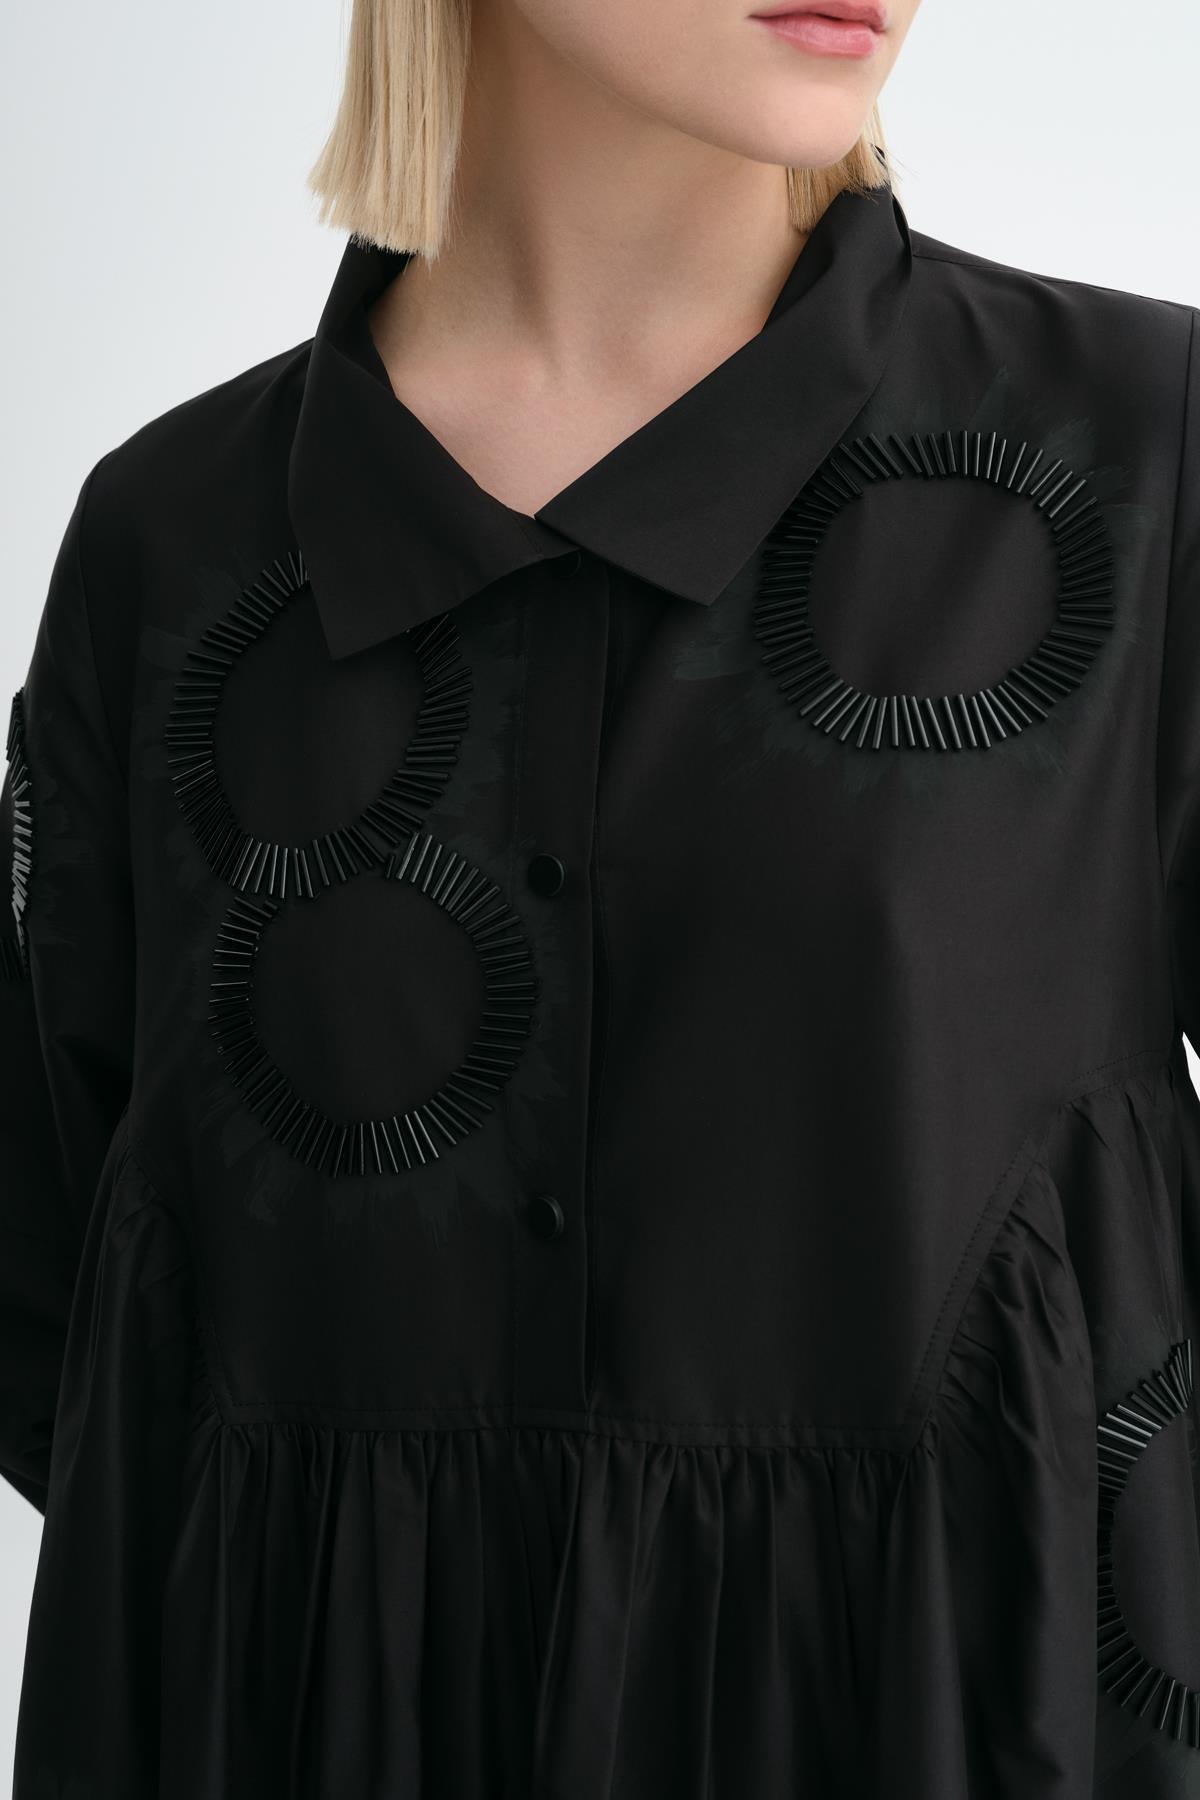 Siyah Boncuk İşlemeli Gömlek Yaka Uzun Elbise - MİİN